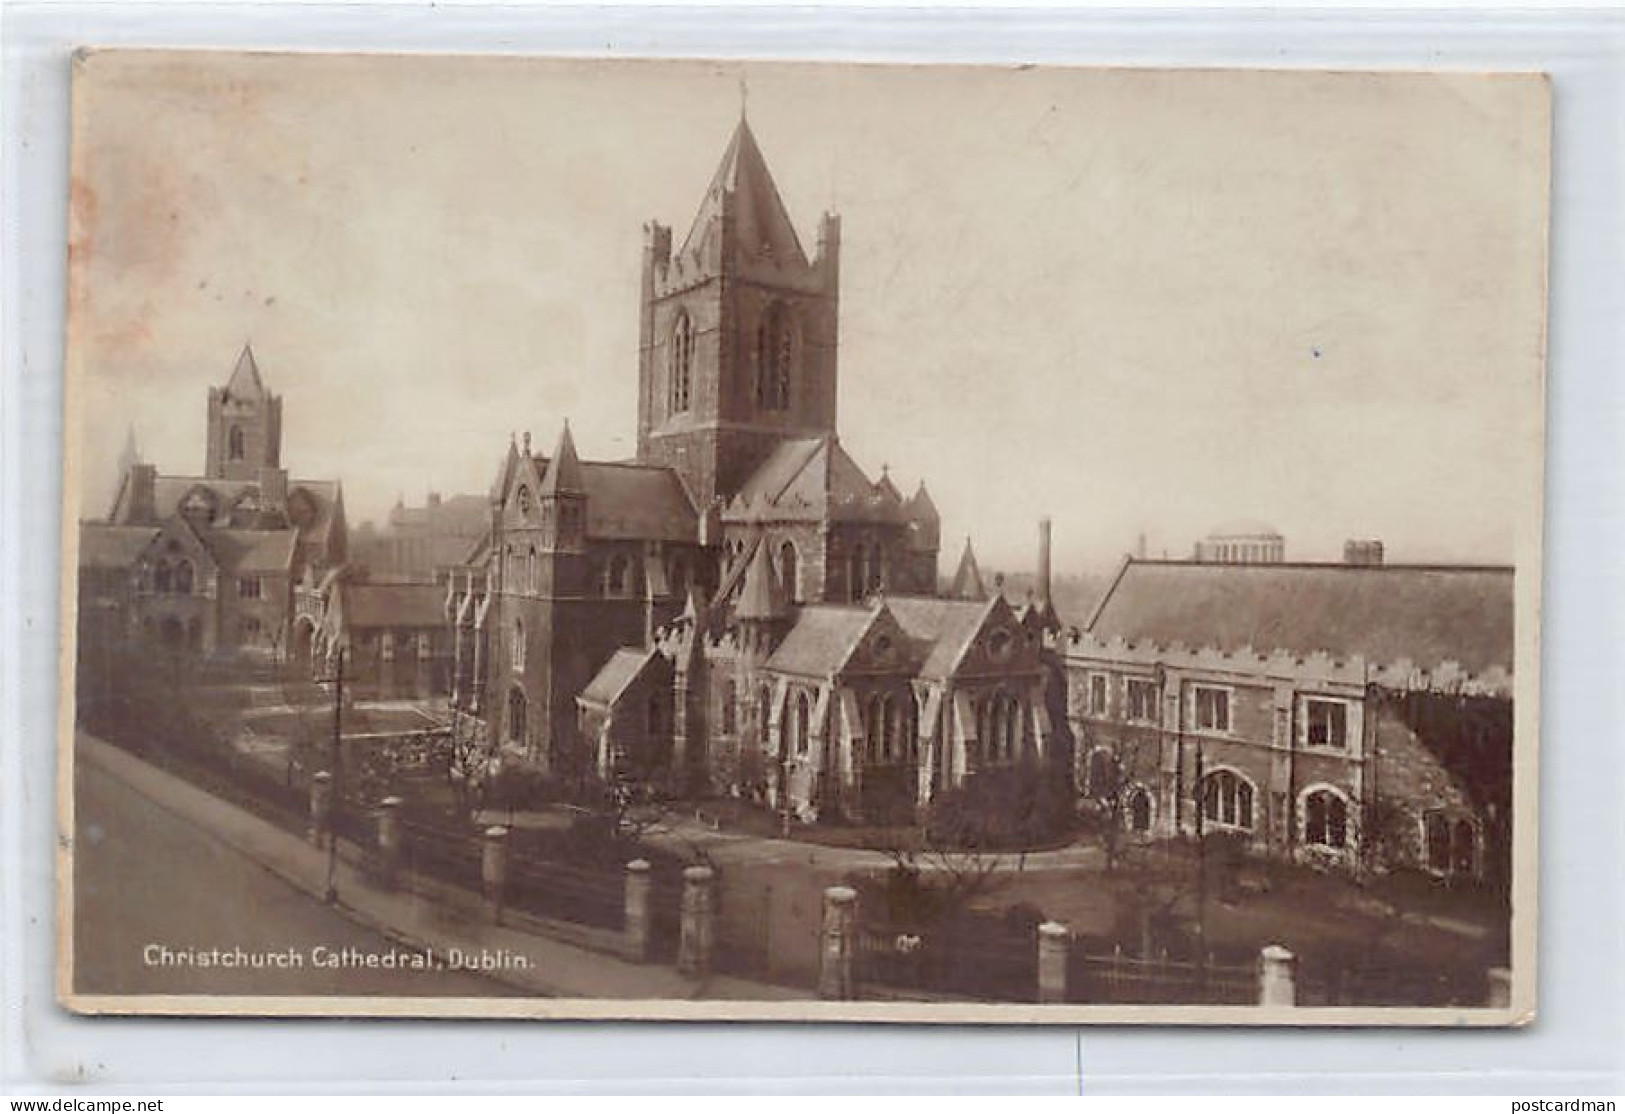 Eire - DUBLIN - Christchurch Cathedral - Dublin